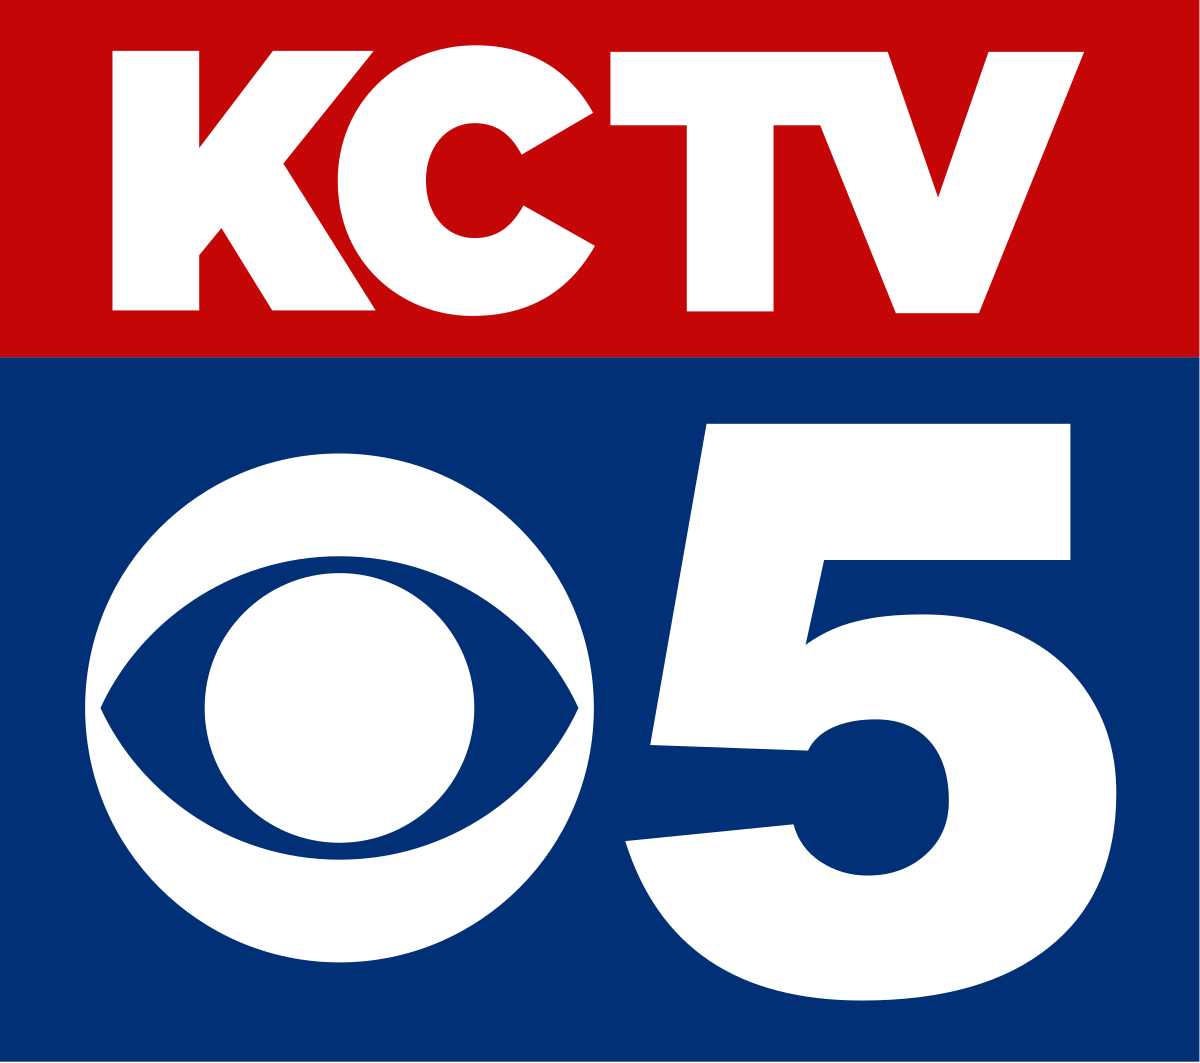 KCTV5 logo